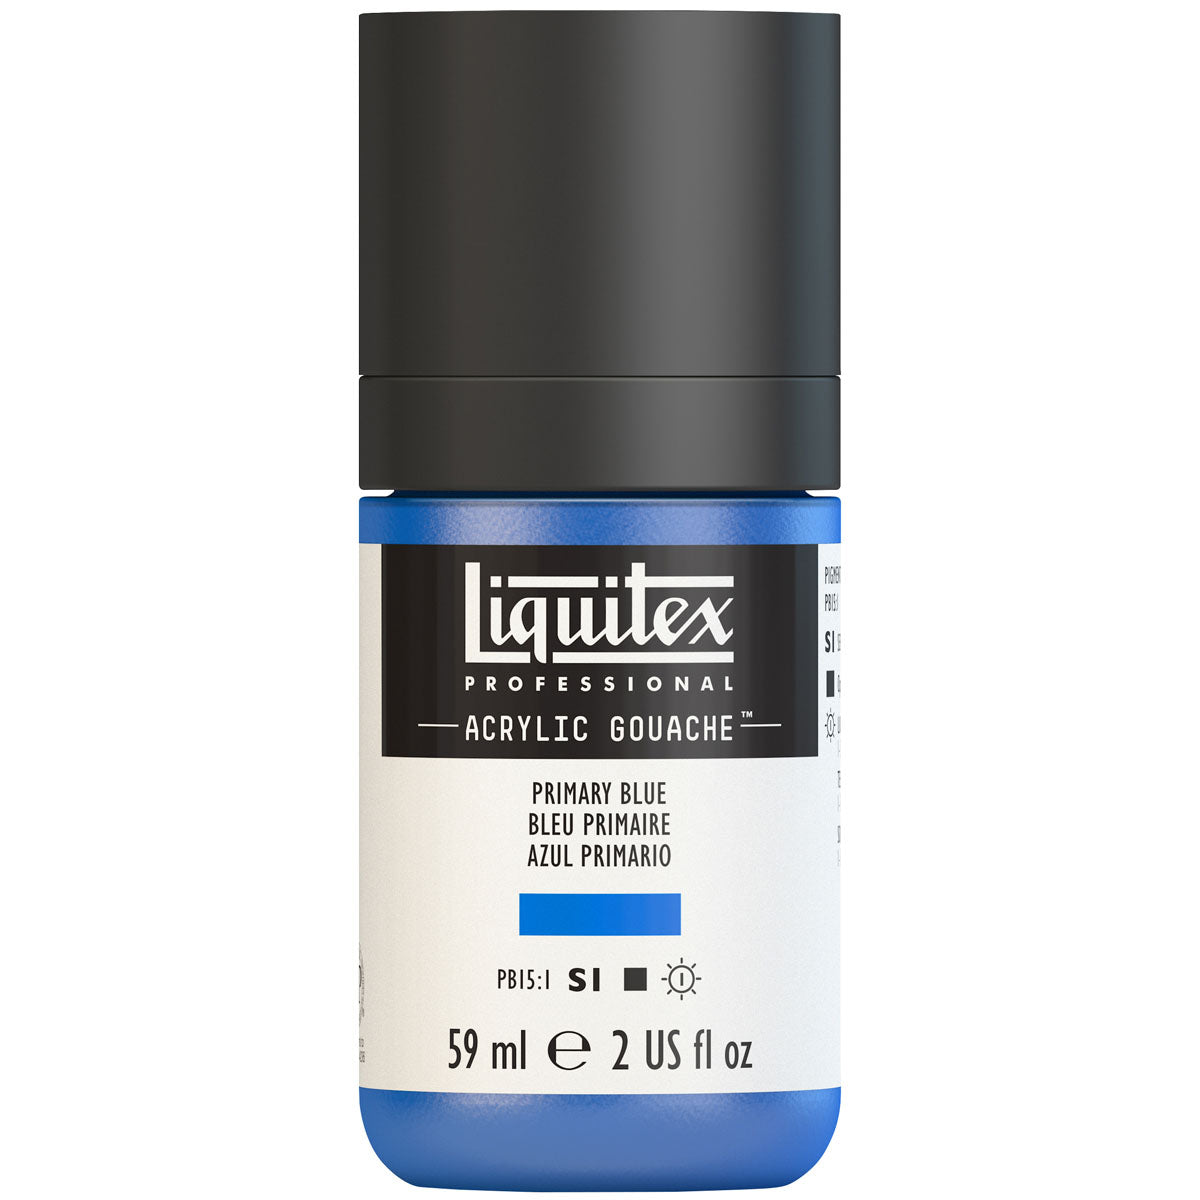 Liquitex - Acryl Gouache 59ml S1 - Primair Blue